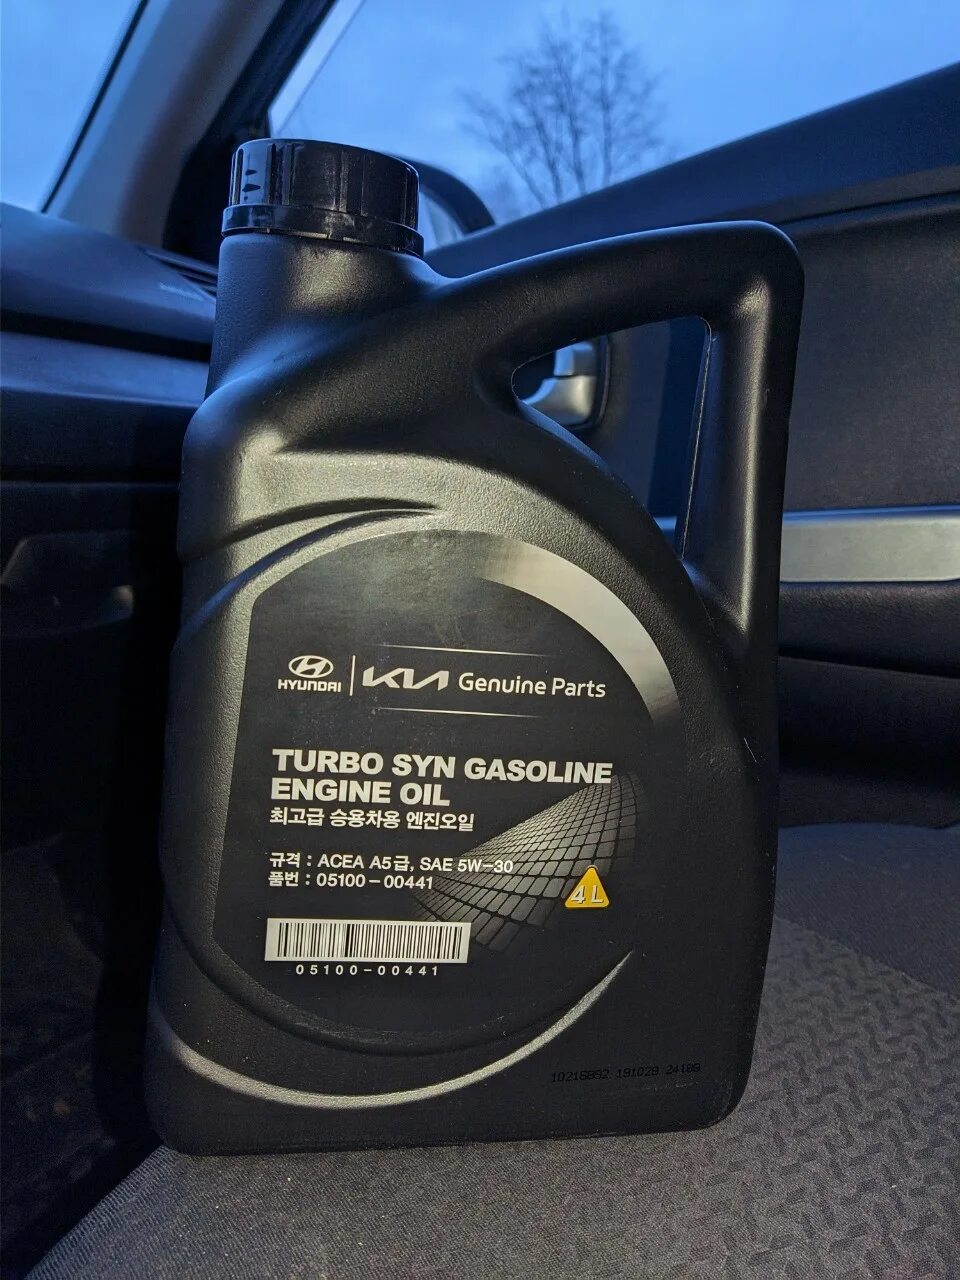 Hyundai Turbo gasoline 5w-30. Hyundai Turbo syn gasoline 5w-30. Масло Hyundai 5w30 Turbo syn. Kia Turbo syn 5w30. Масло hyundai gasoline 5w30